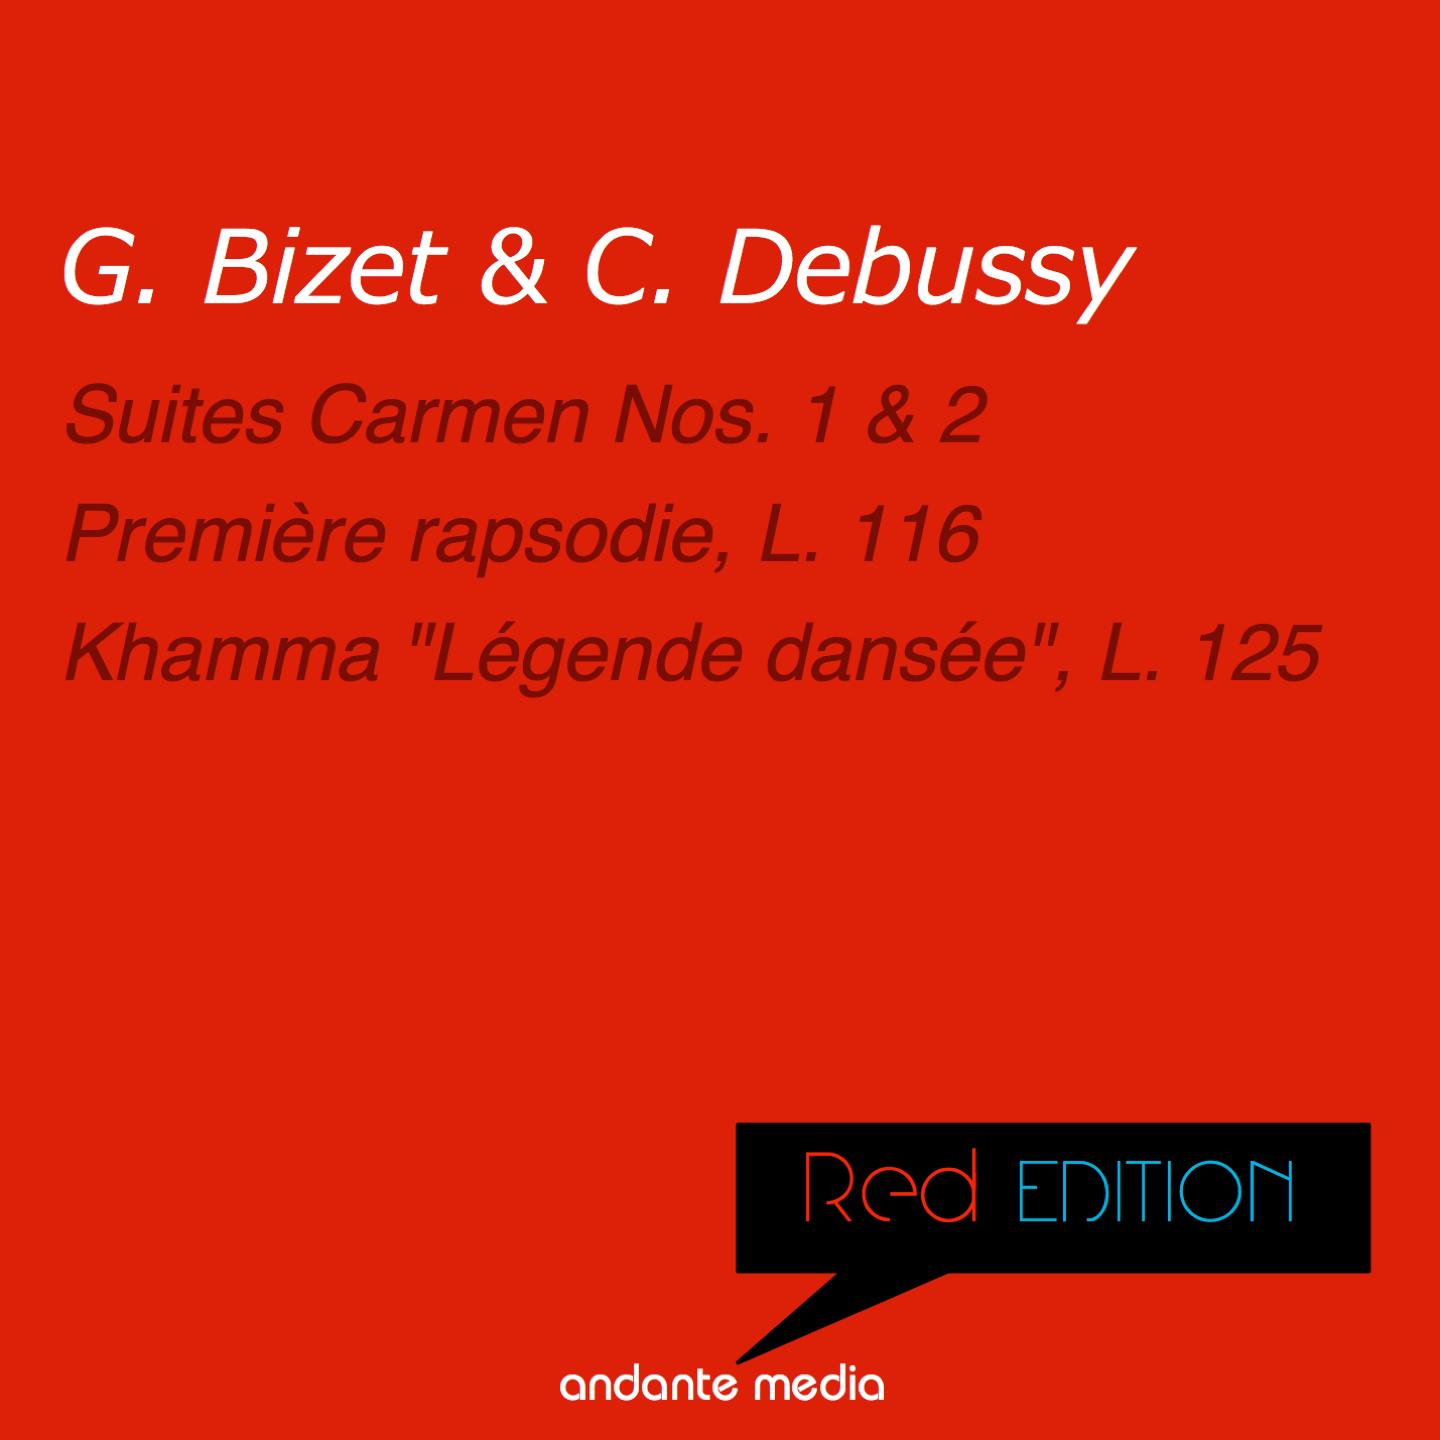 Red Edition  Bizet  Debussy: Suites Carmen Nos. 1, 2  Khamma " Le gende danse e", L. 125